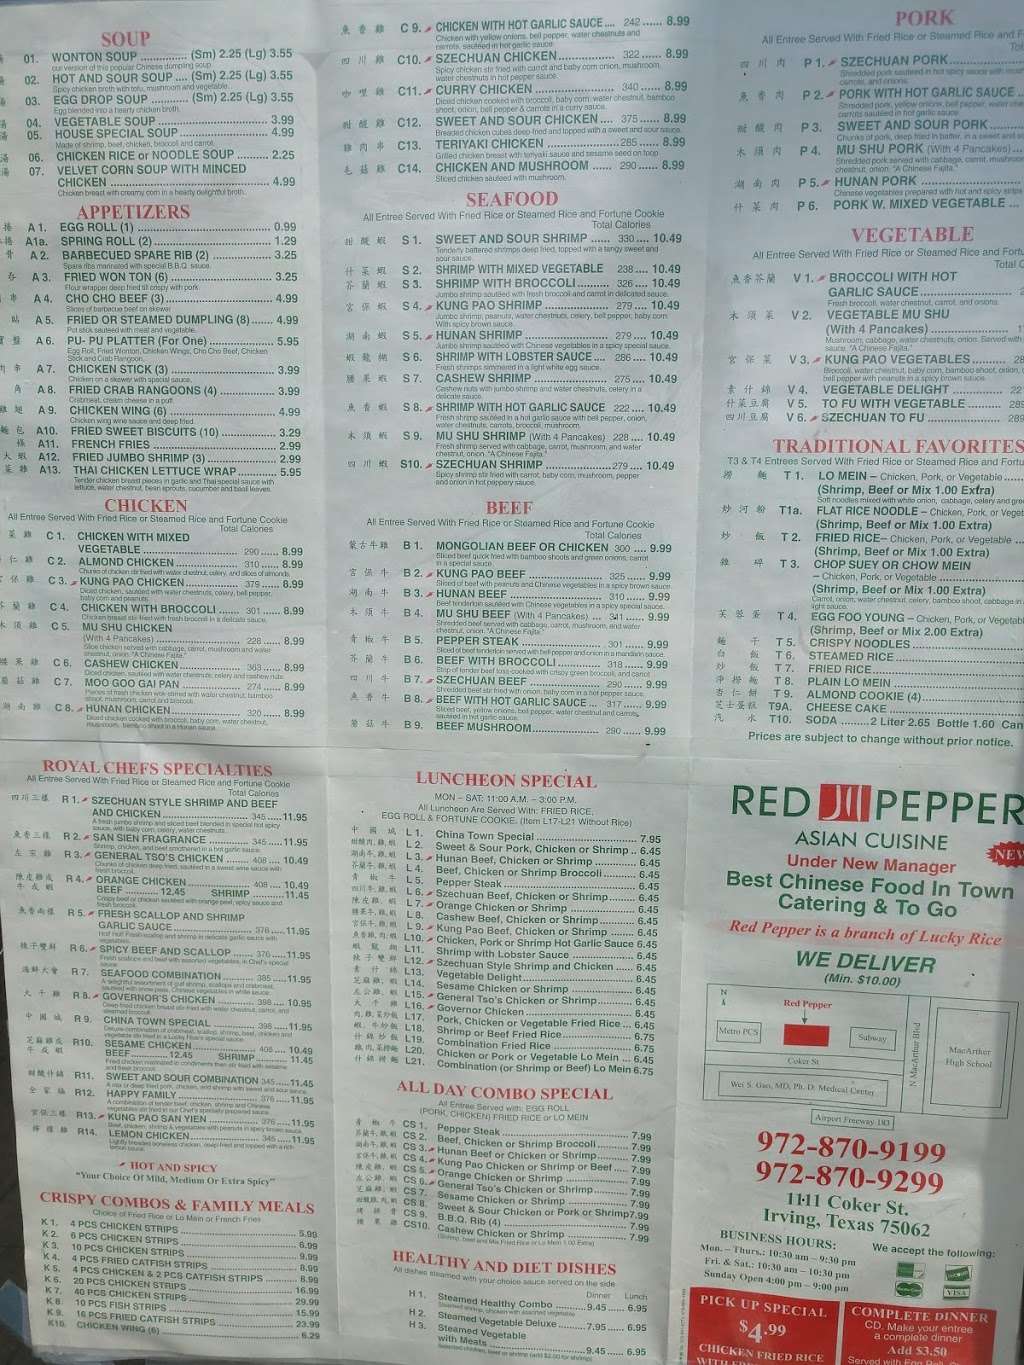 Red Pepper Asian Cuisine | 1111 Coker St, Irving, TX 75062 | Phone: (972) 870-9199